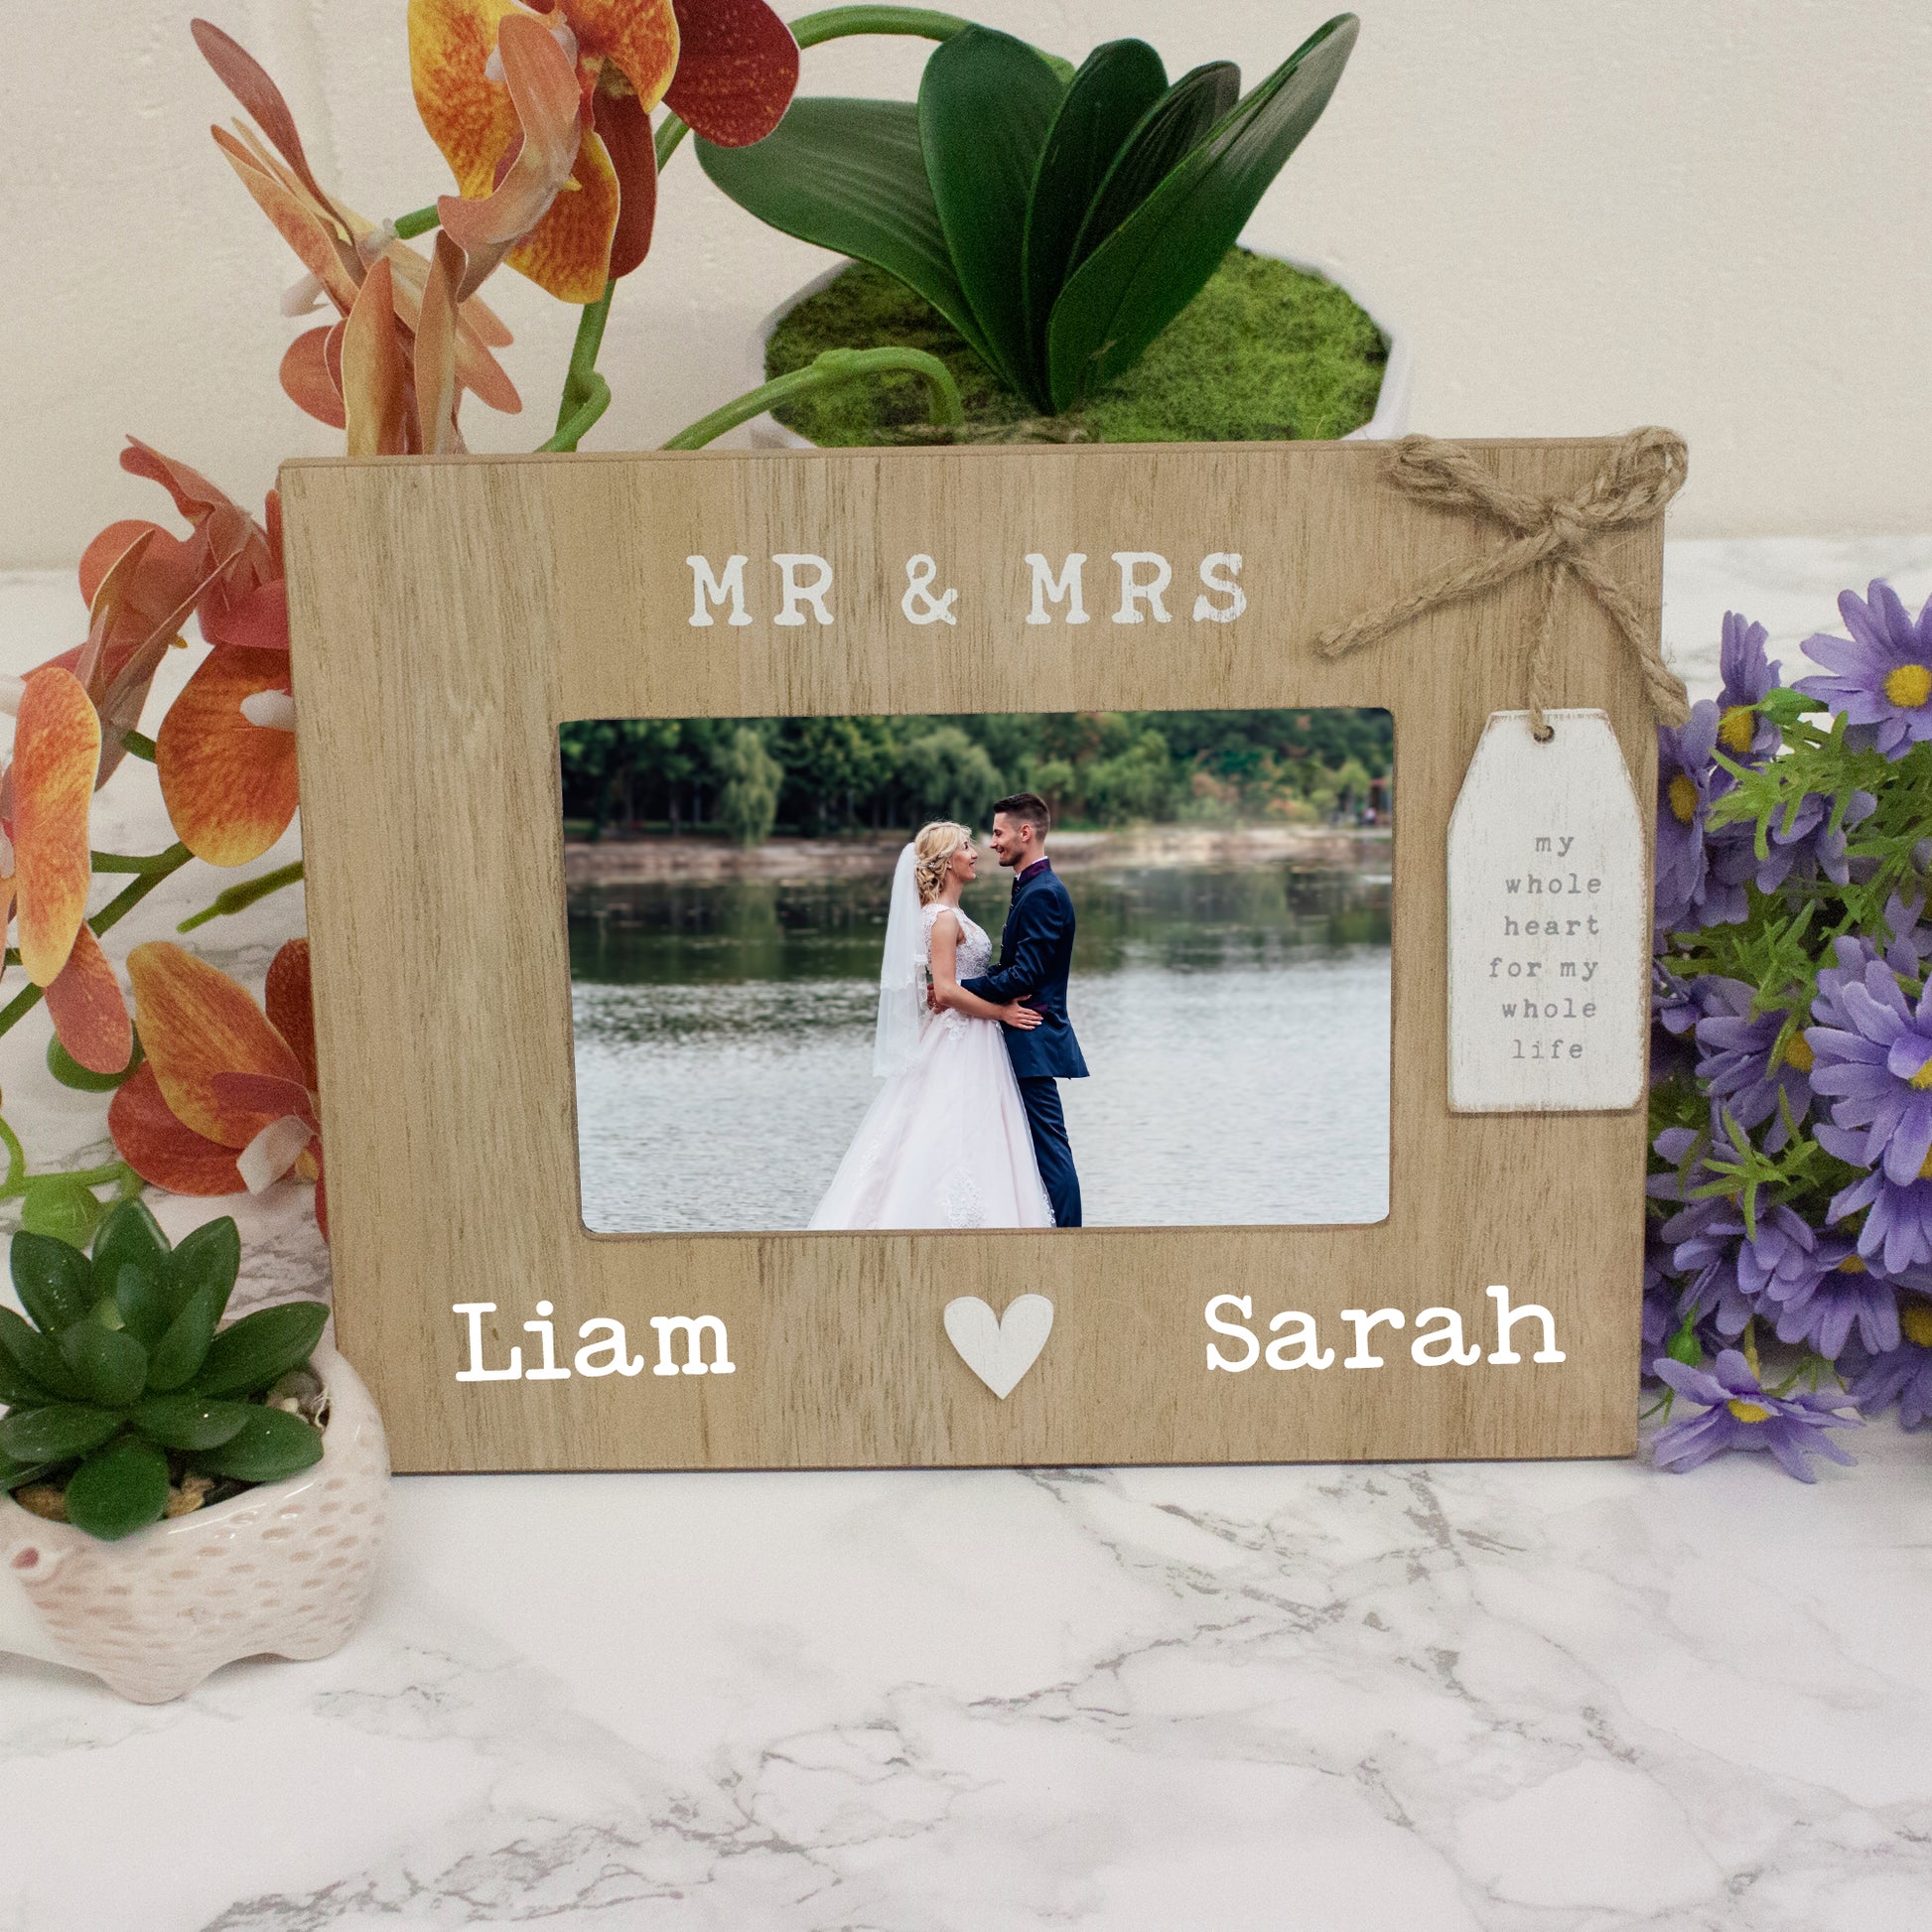 Personalised Mr & Mrs Wedding Photo Frame  - Always Looking Good -   